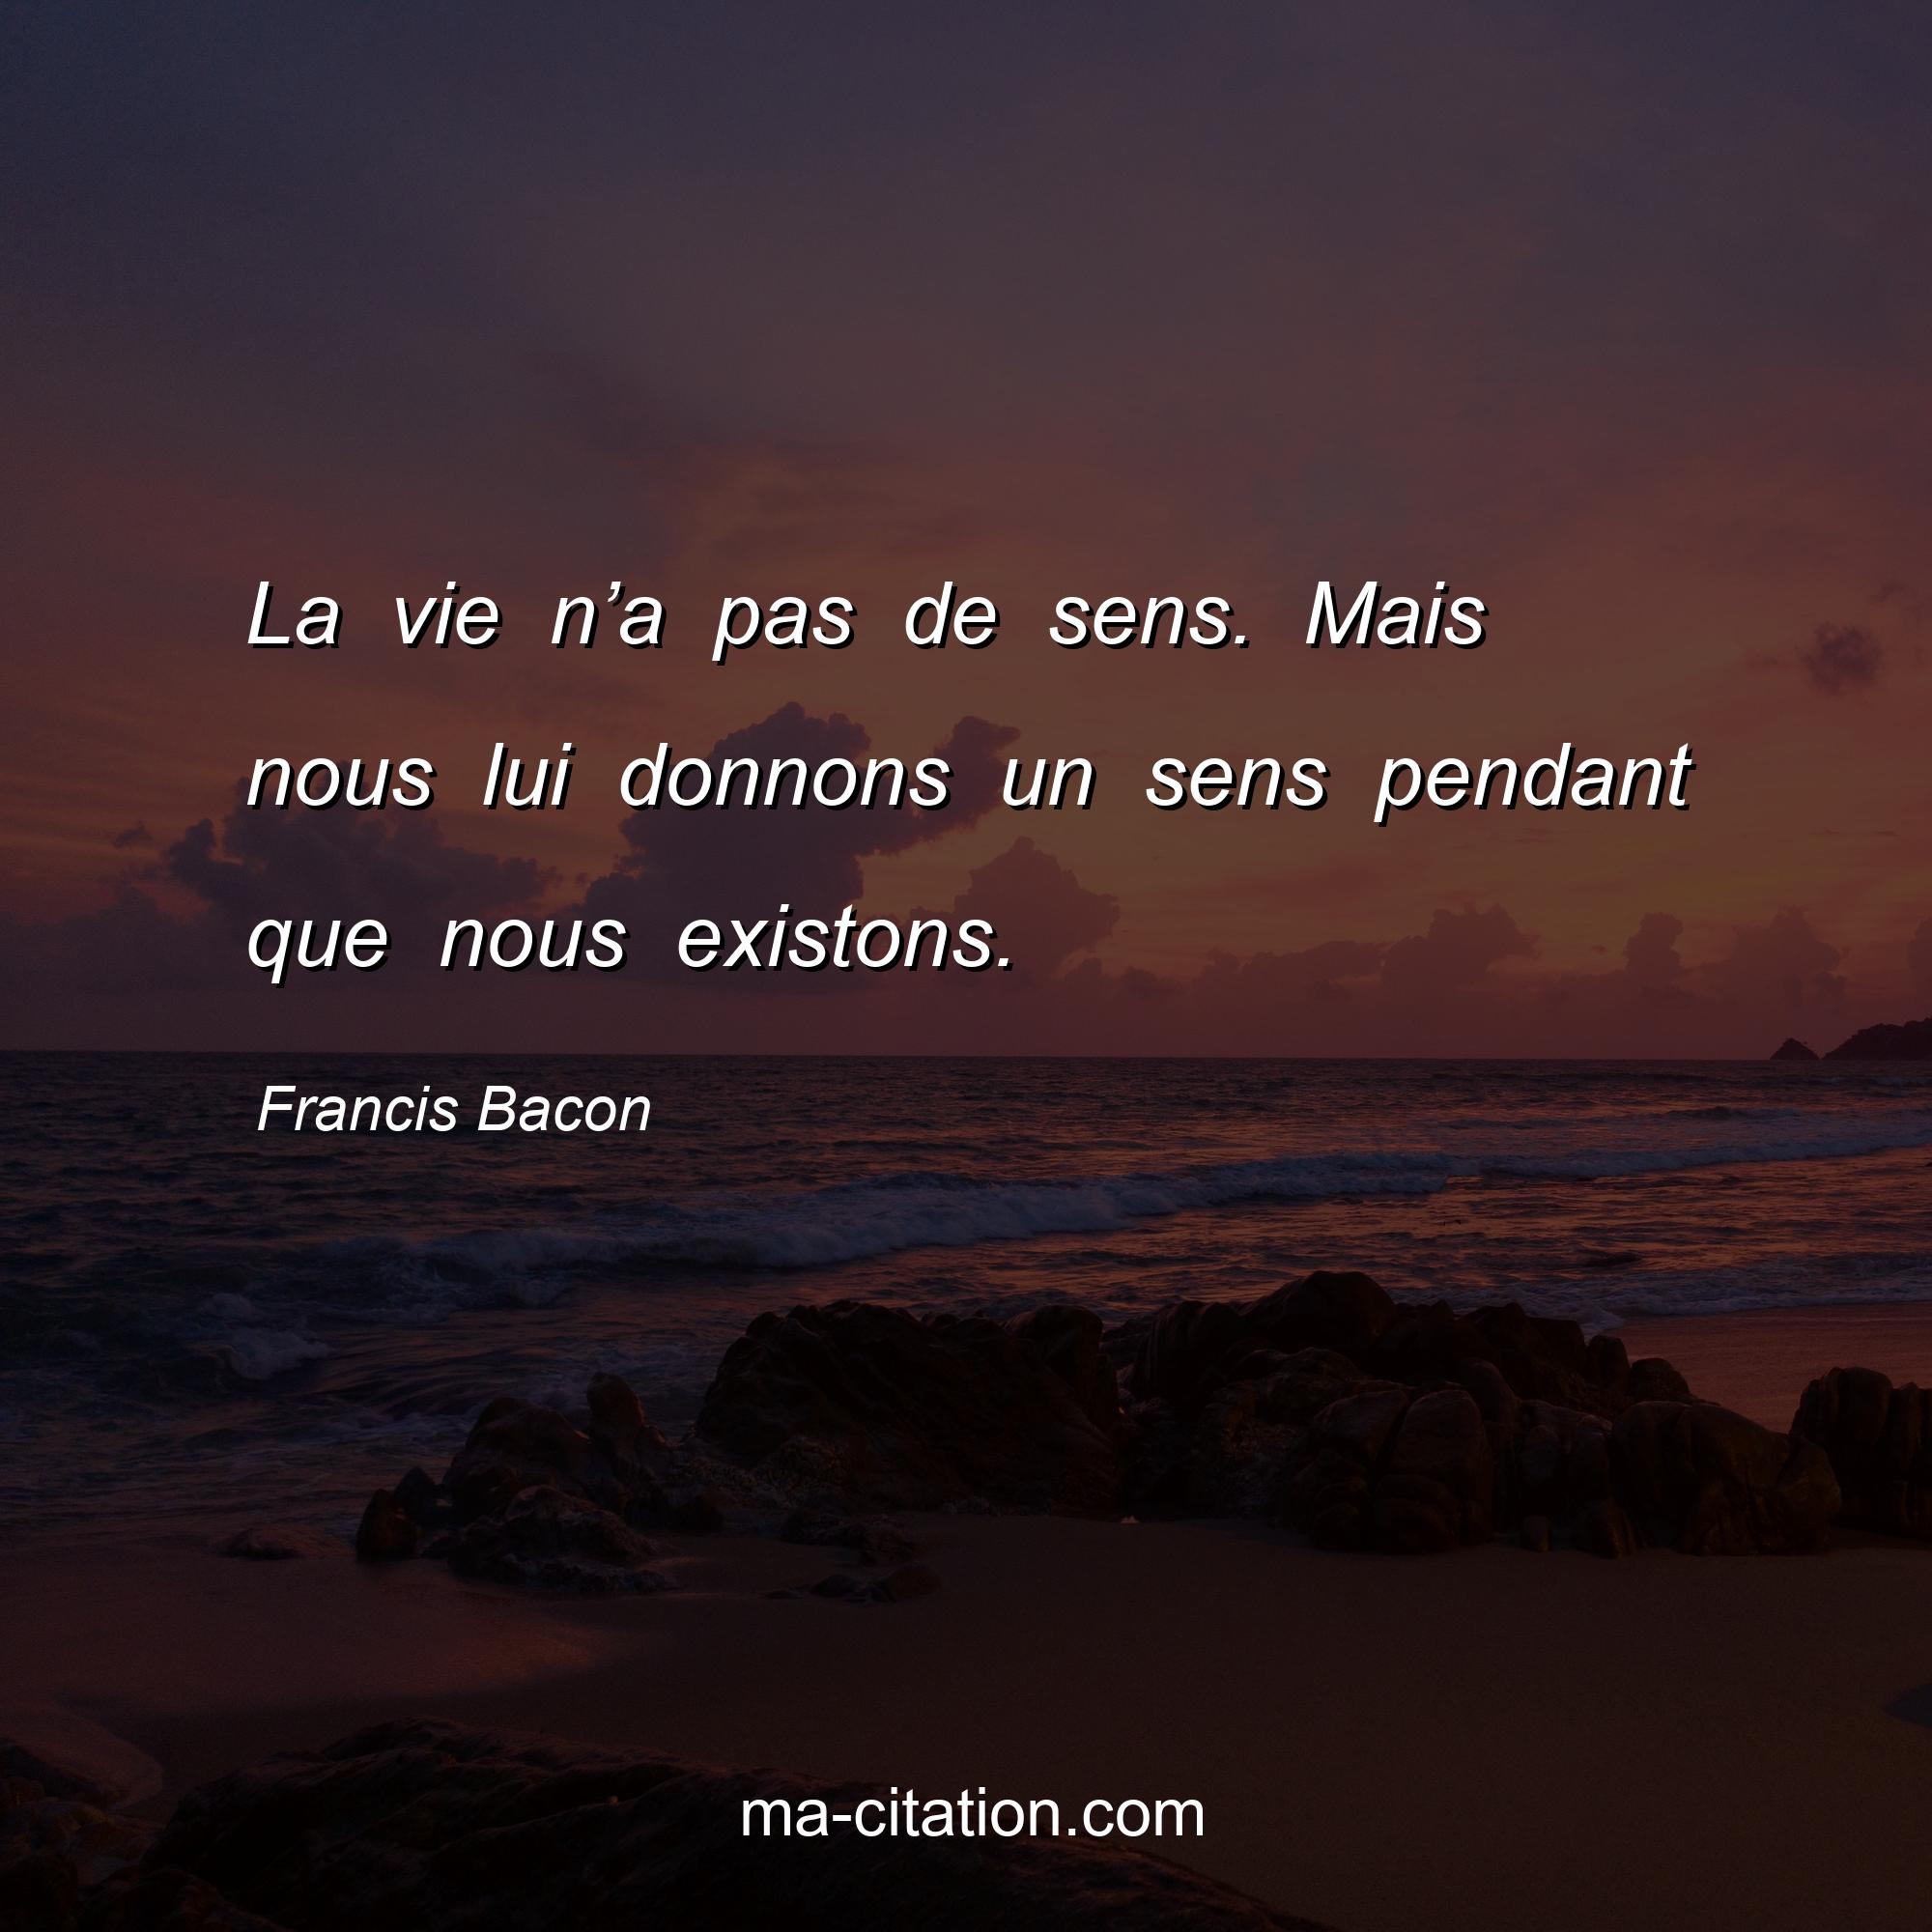 Francis Bacon : La vie n’a pas de sens. Mais nous lui donnons un sens pendant que nous existons.